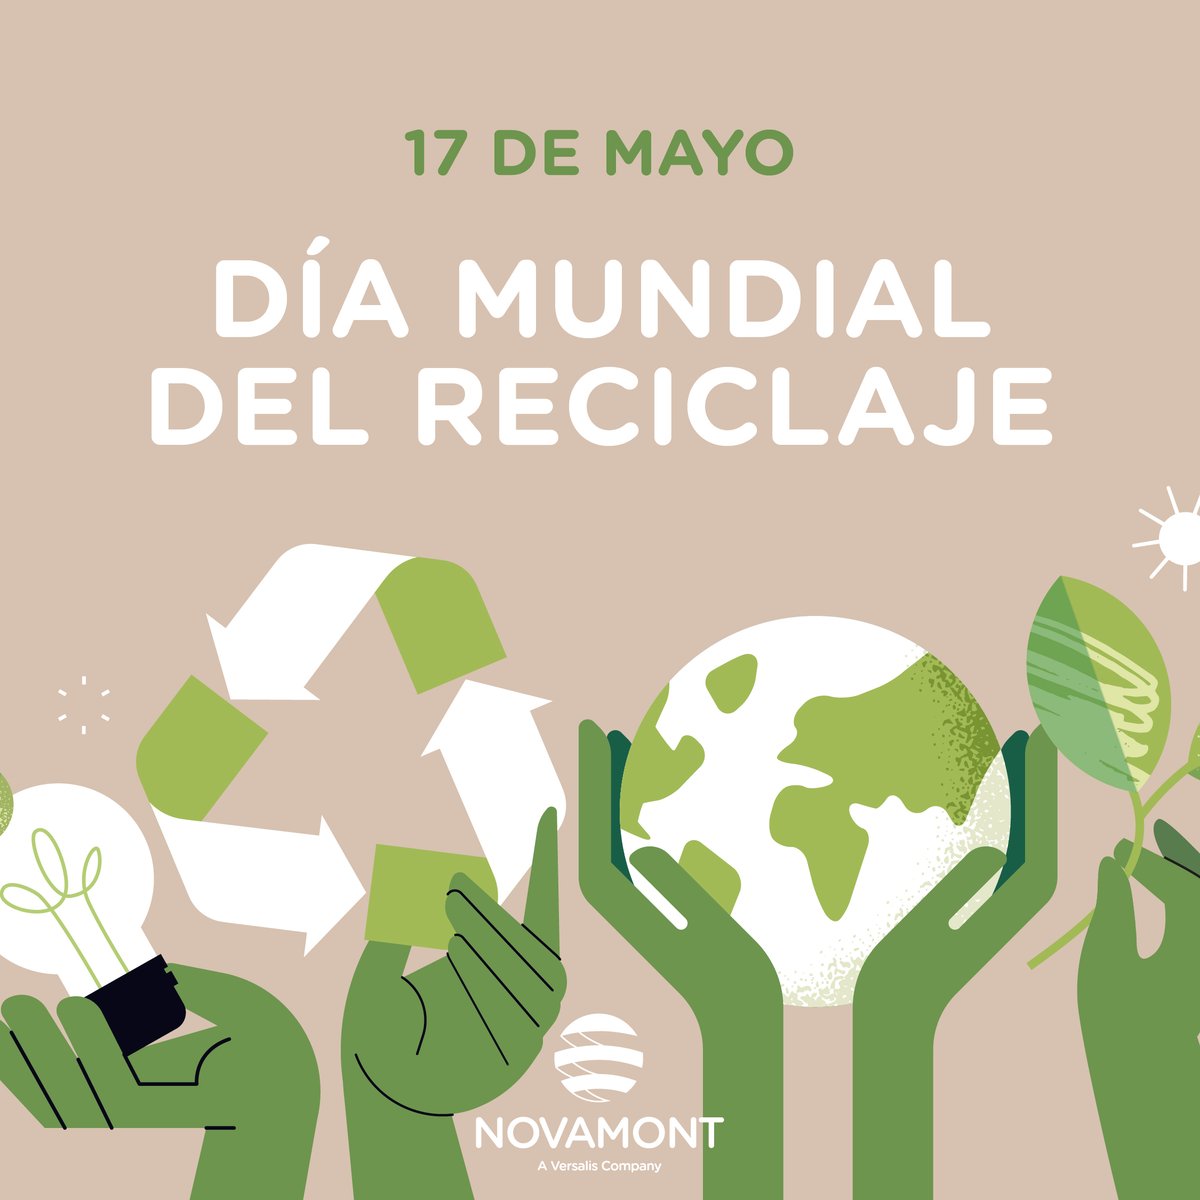 🥳Hoy celebramos el Día Mundial del Reciclaje ♻️ Debemos tratar los residuos como corresponden y reducir al mínimo la cantidad que va a vertederos e incineradoras 🏭. Para proteger el #medioambiente tenemos una responsabilidad individual y colectiva. El #reciclaje es el